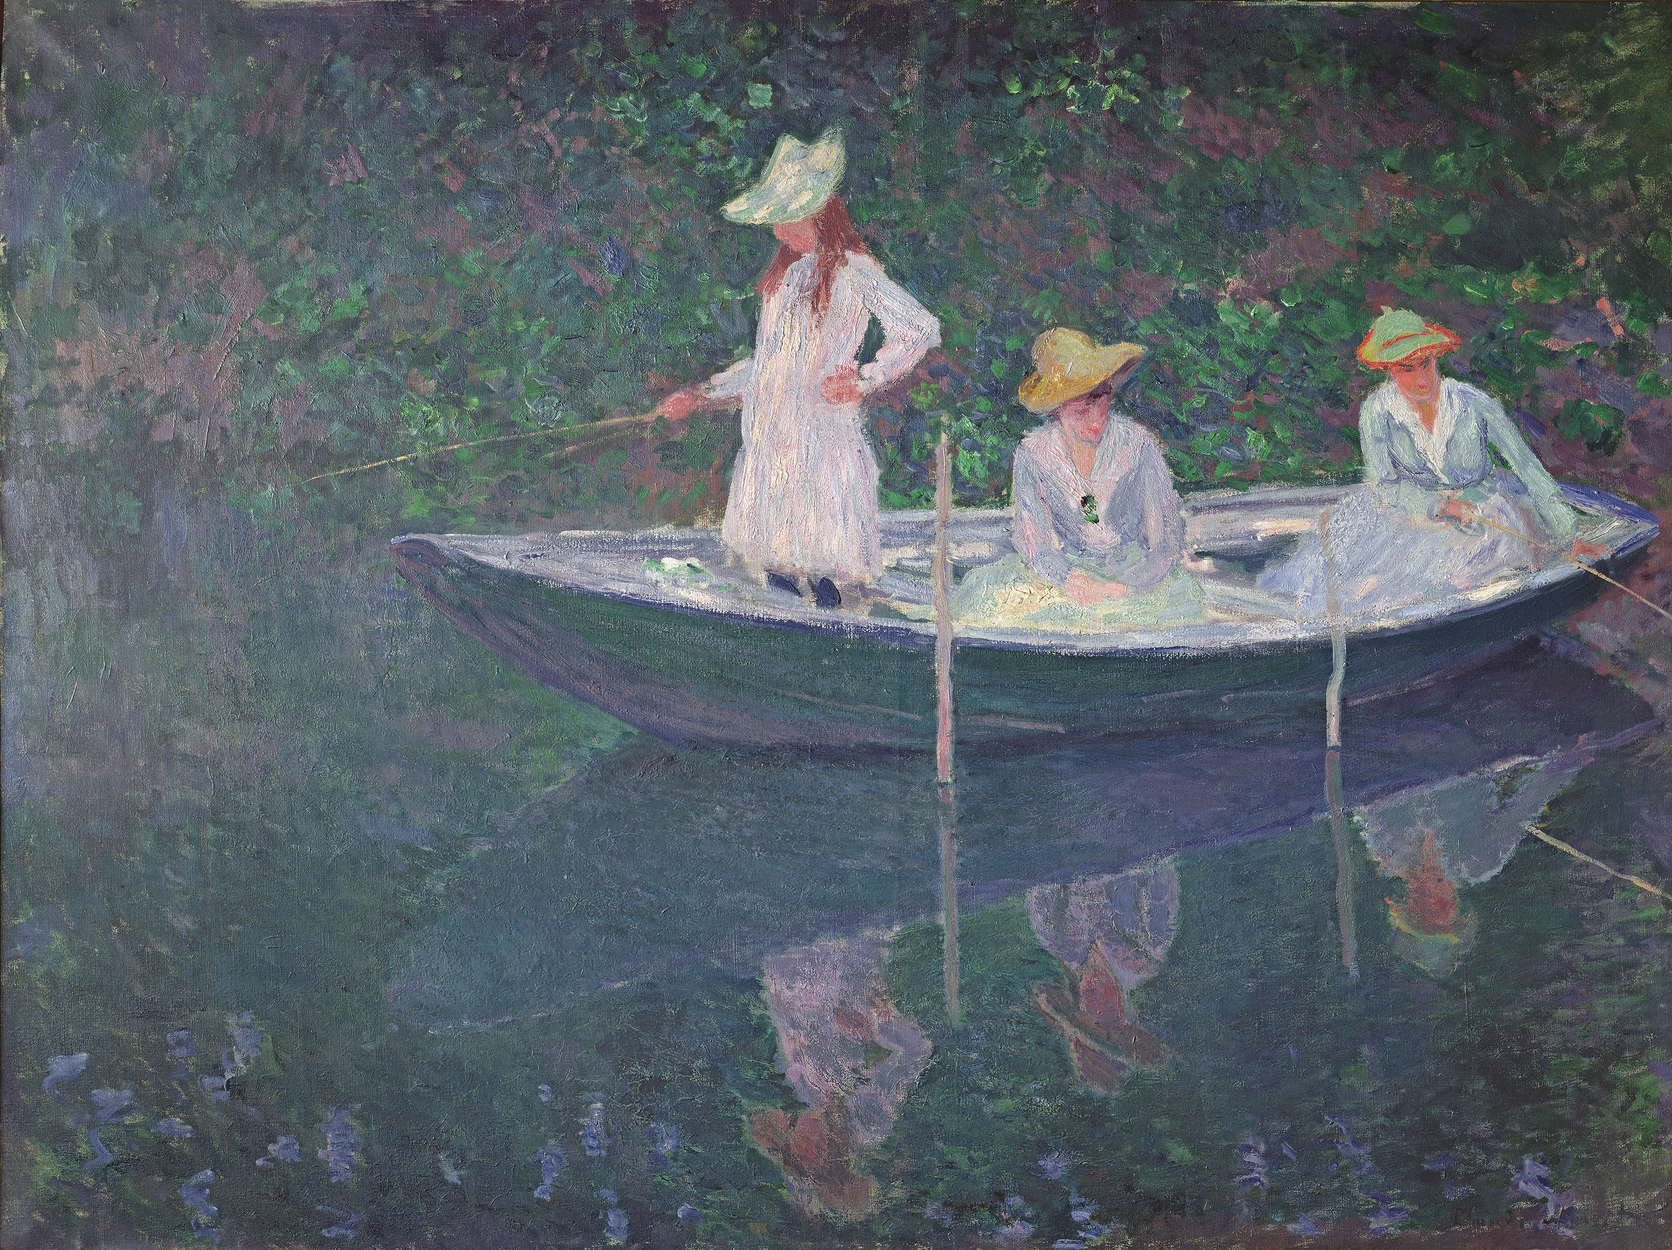             Fototapete "Das Boot in Giverny" von Claude Monet
        